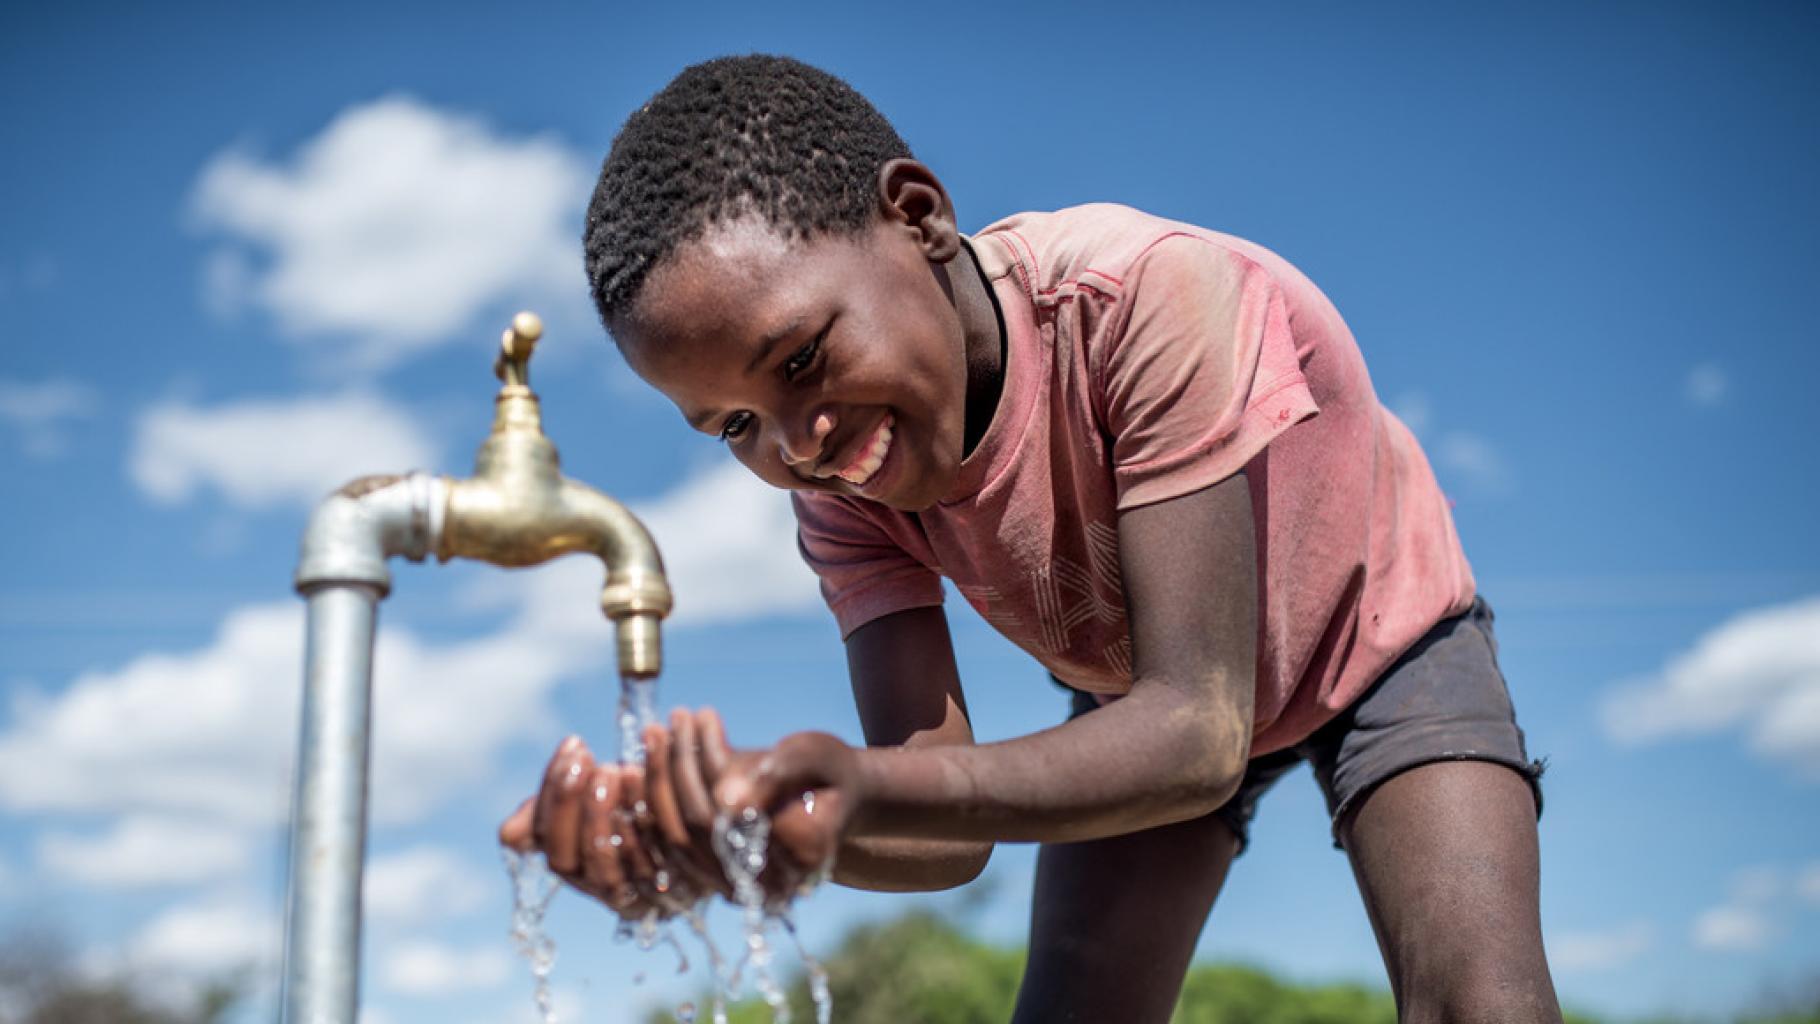 Ein Kind fängt Wasser aus einem Wasserhahn mit den Händen auf.